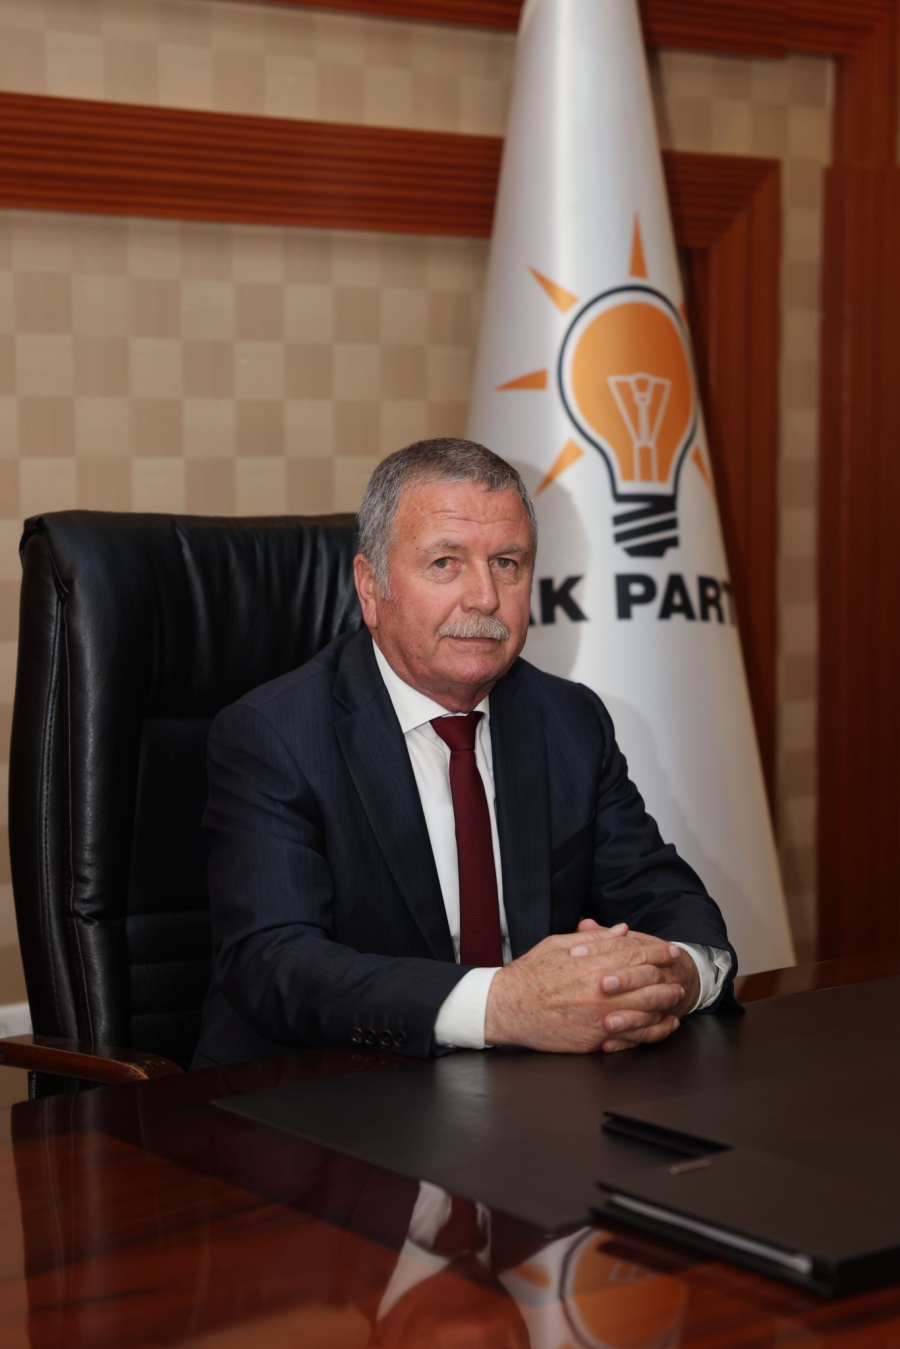 AK Parti Kırıkkale İl Başkanı Bahadır Kılıç Ramazan Bayram mesajı yayınladı.